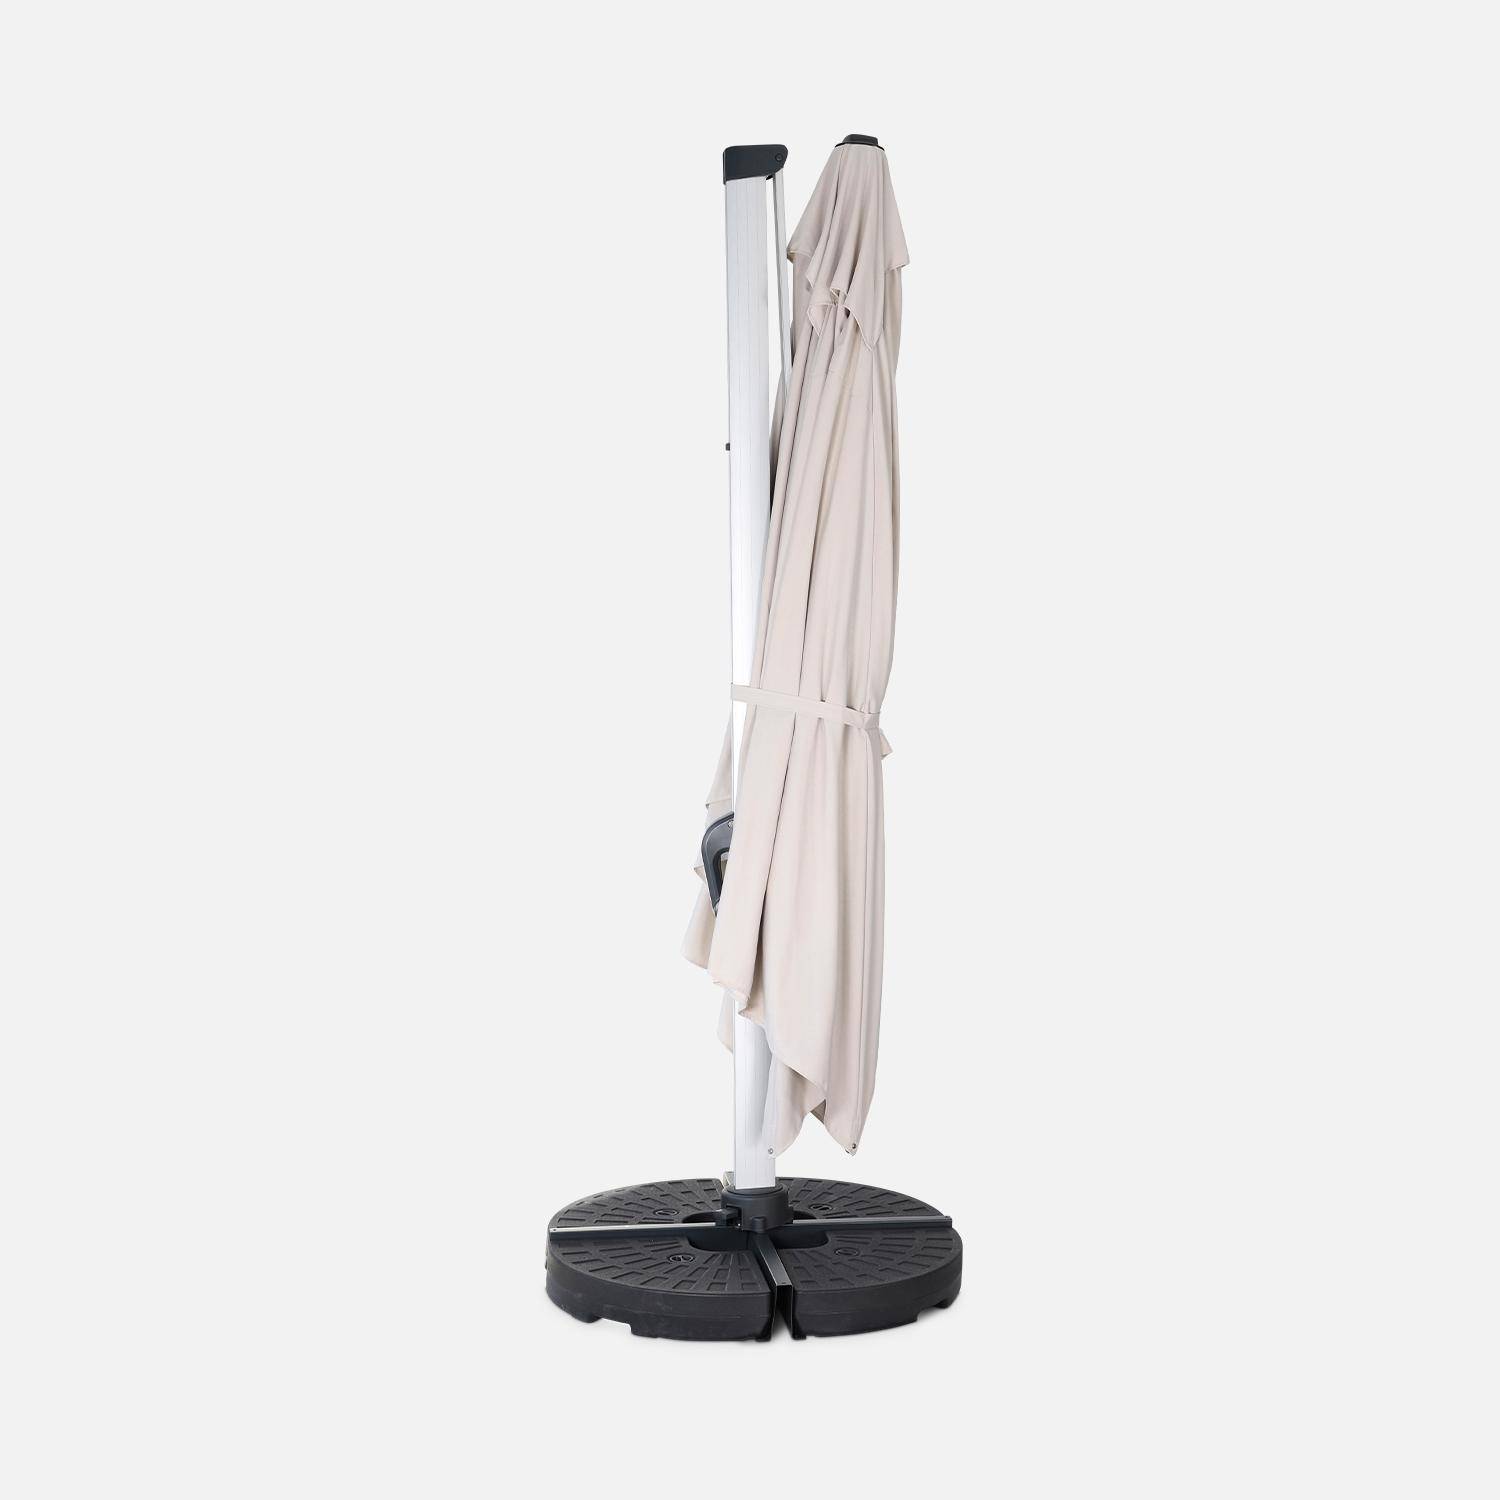 Topkwaliteit parasol, 3x4m, beige polyester doek, geanodiseerd aluminium frame, hoes inbegrepen Photo4